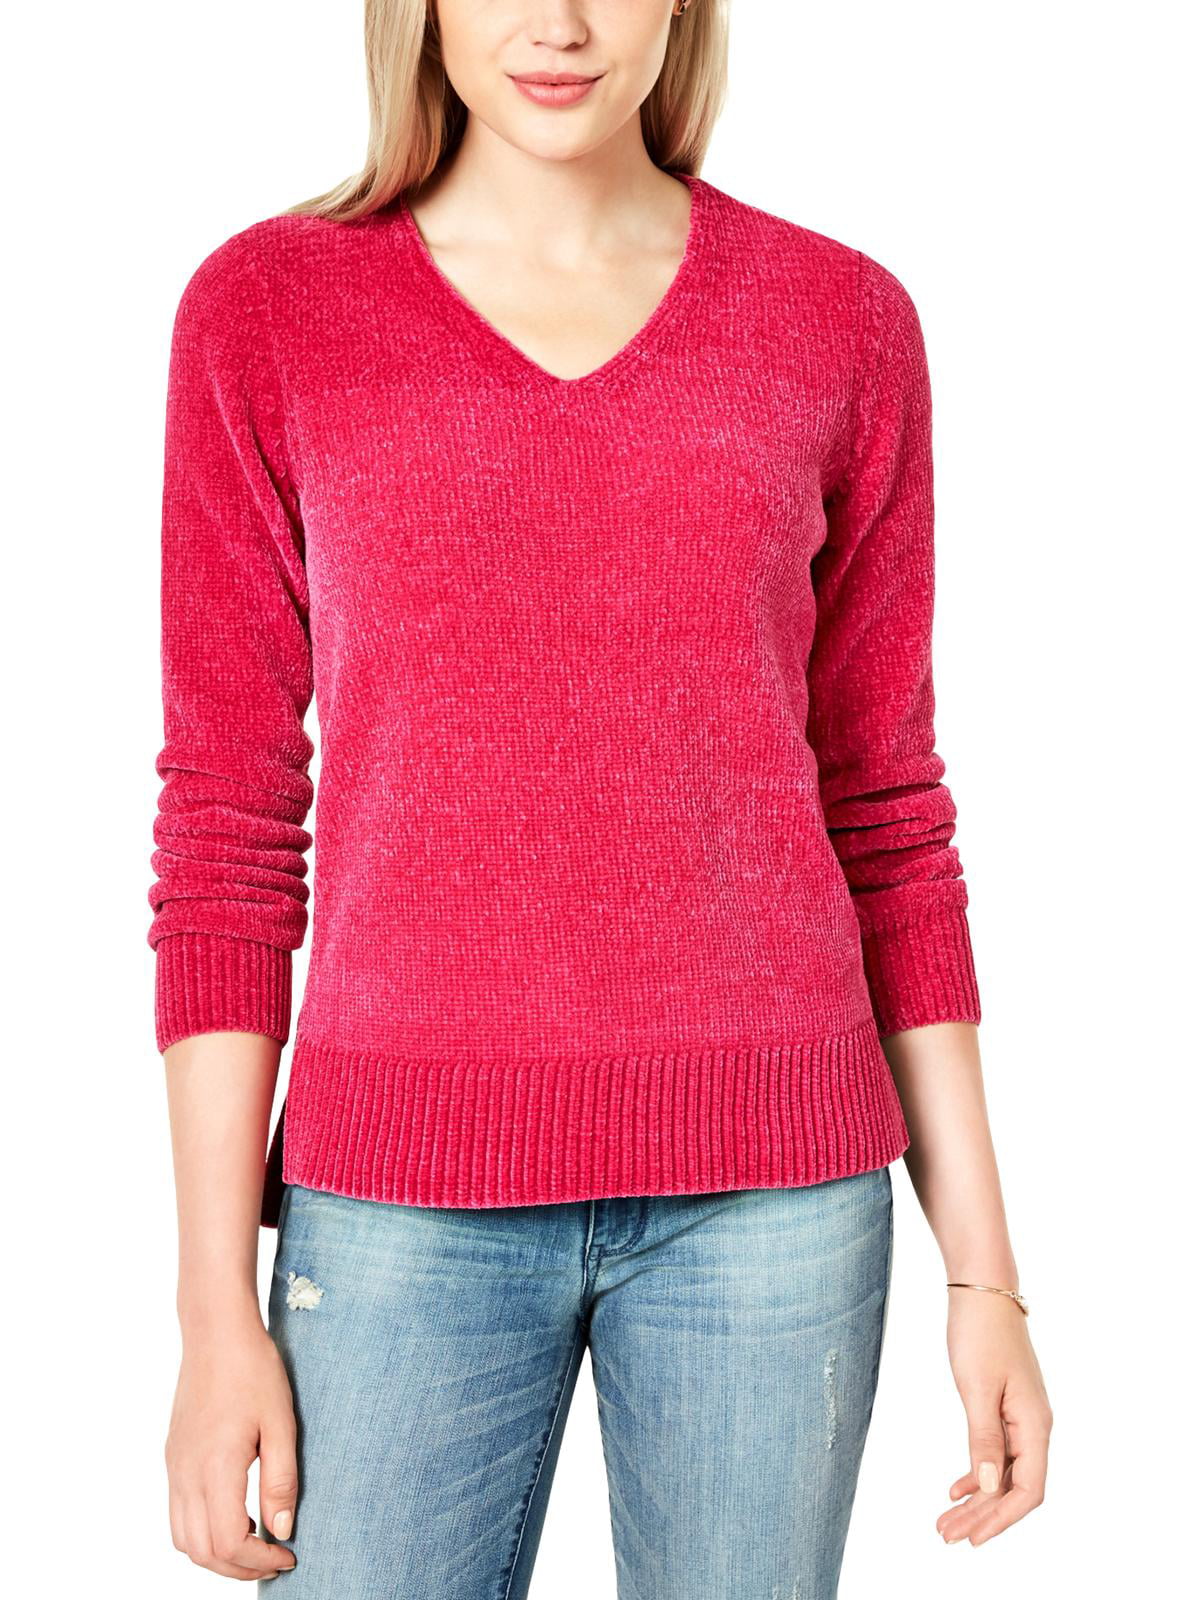 Maison Jules femme Coeur Imprimé Métallique Pullover Sweater Haut BHFO 2623 